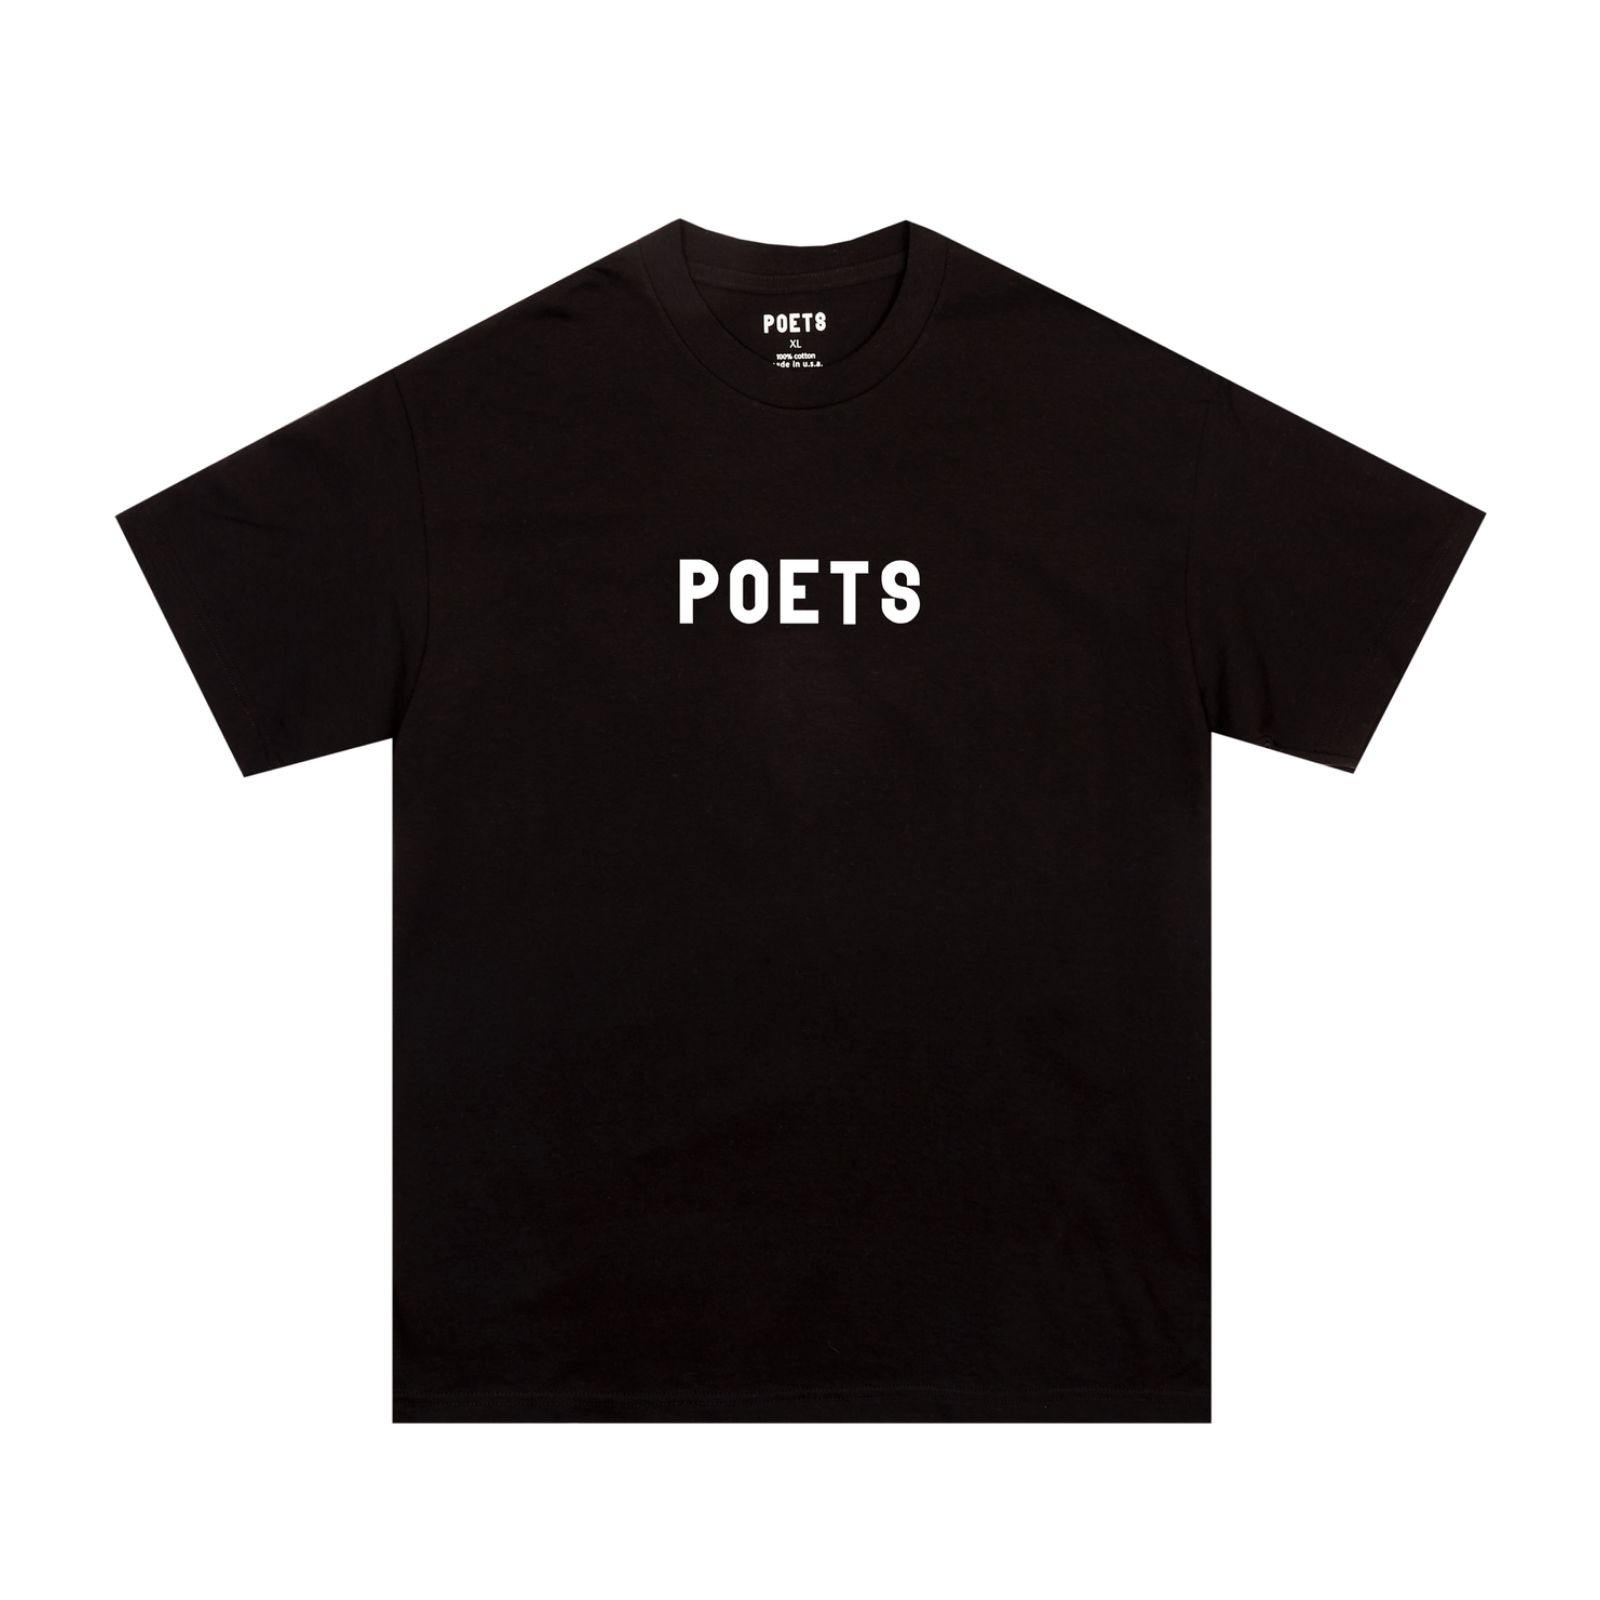 Poets OG Flock Black/White